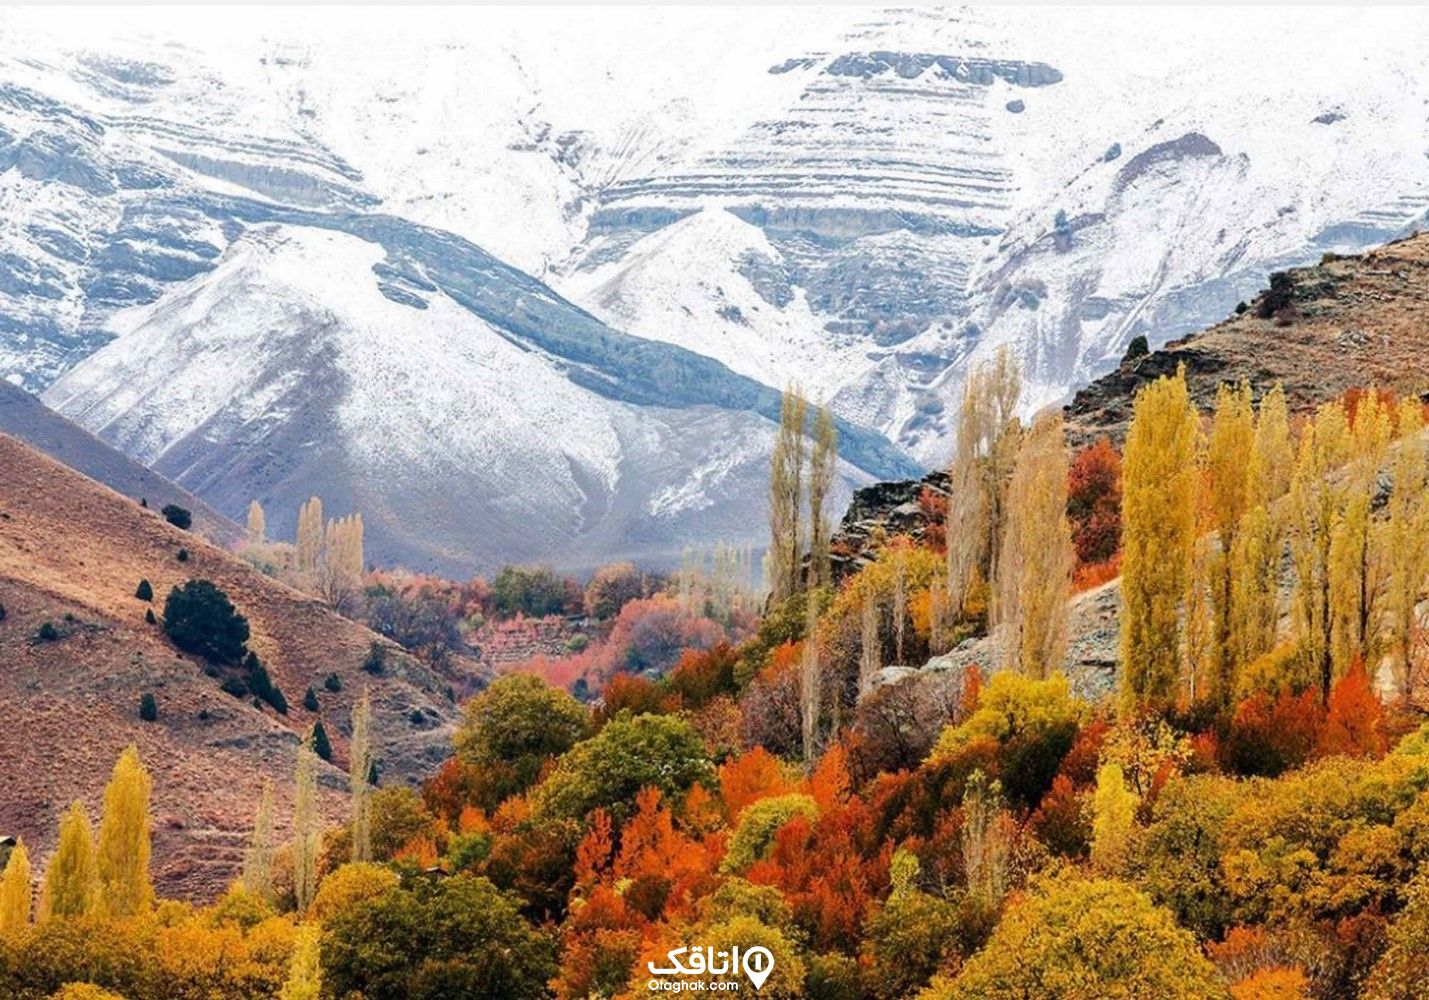 کوه های برفی و کوههای پر از درختان پاییزی با برگ های نارنجی و زرد مربوط به شهر فشم